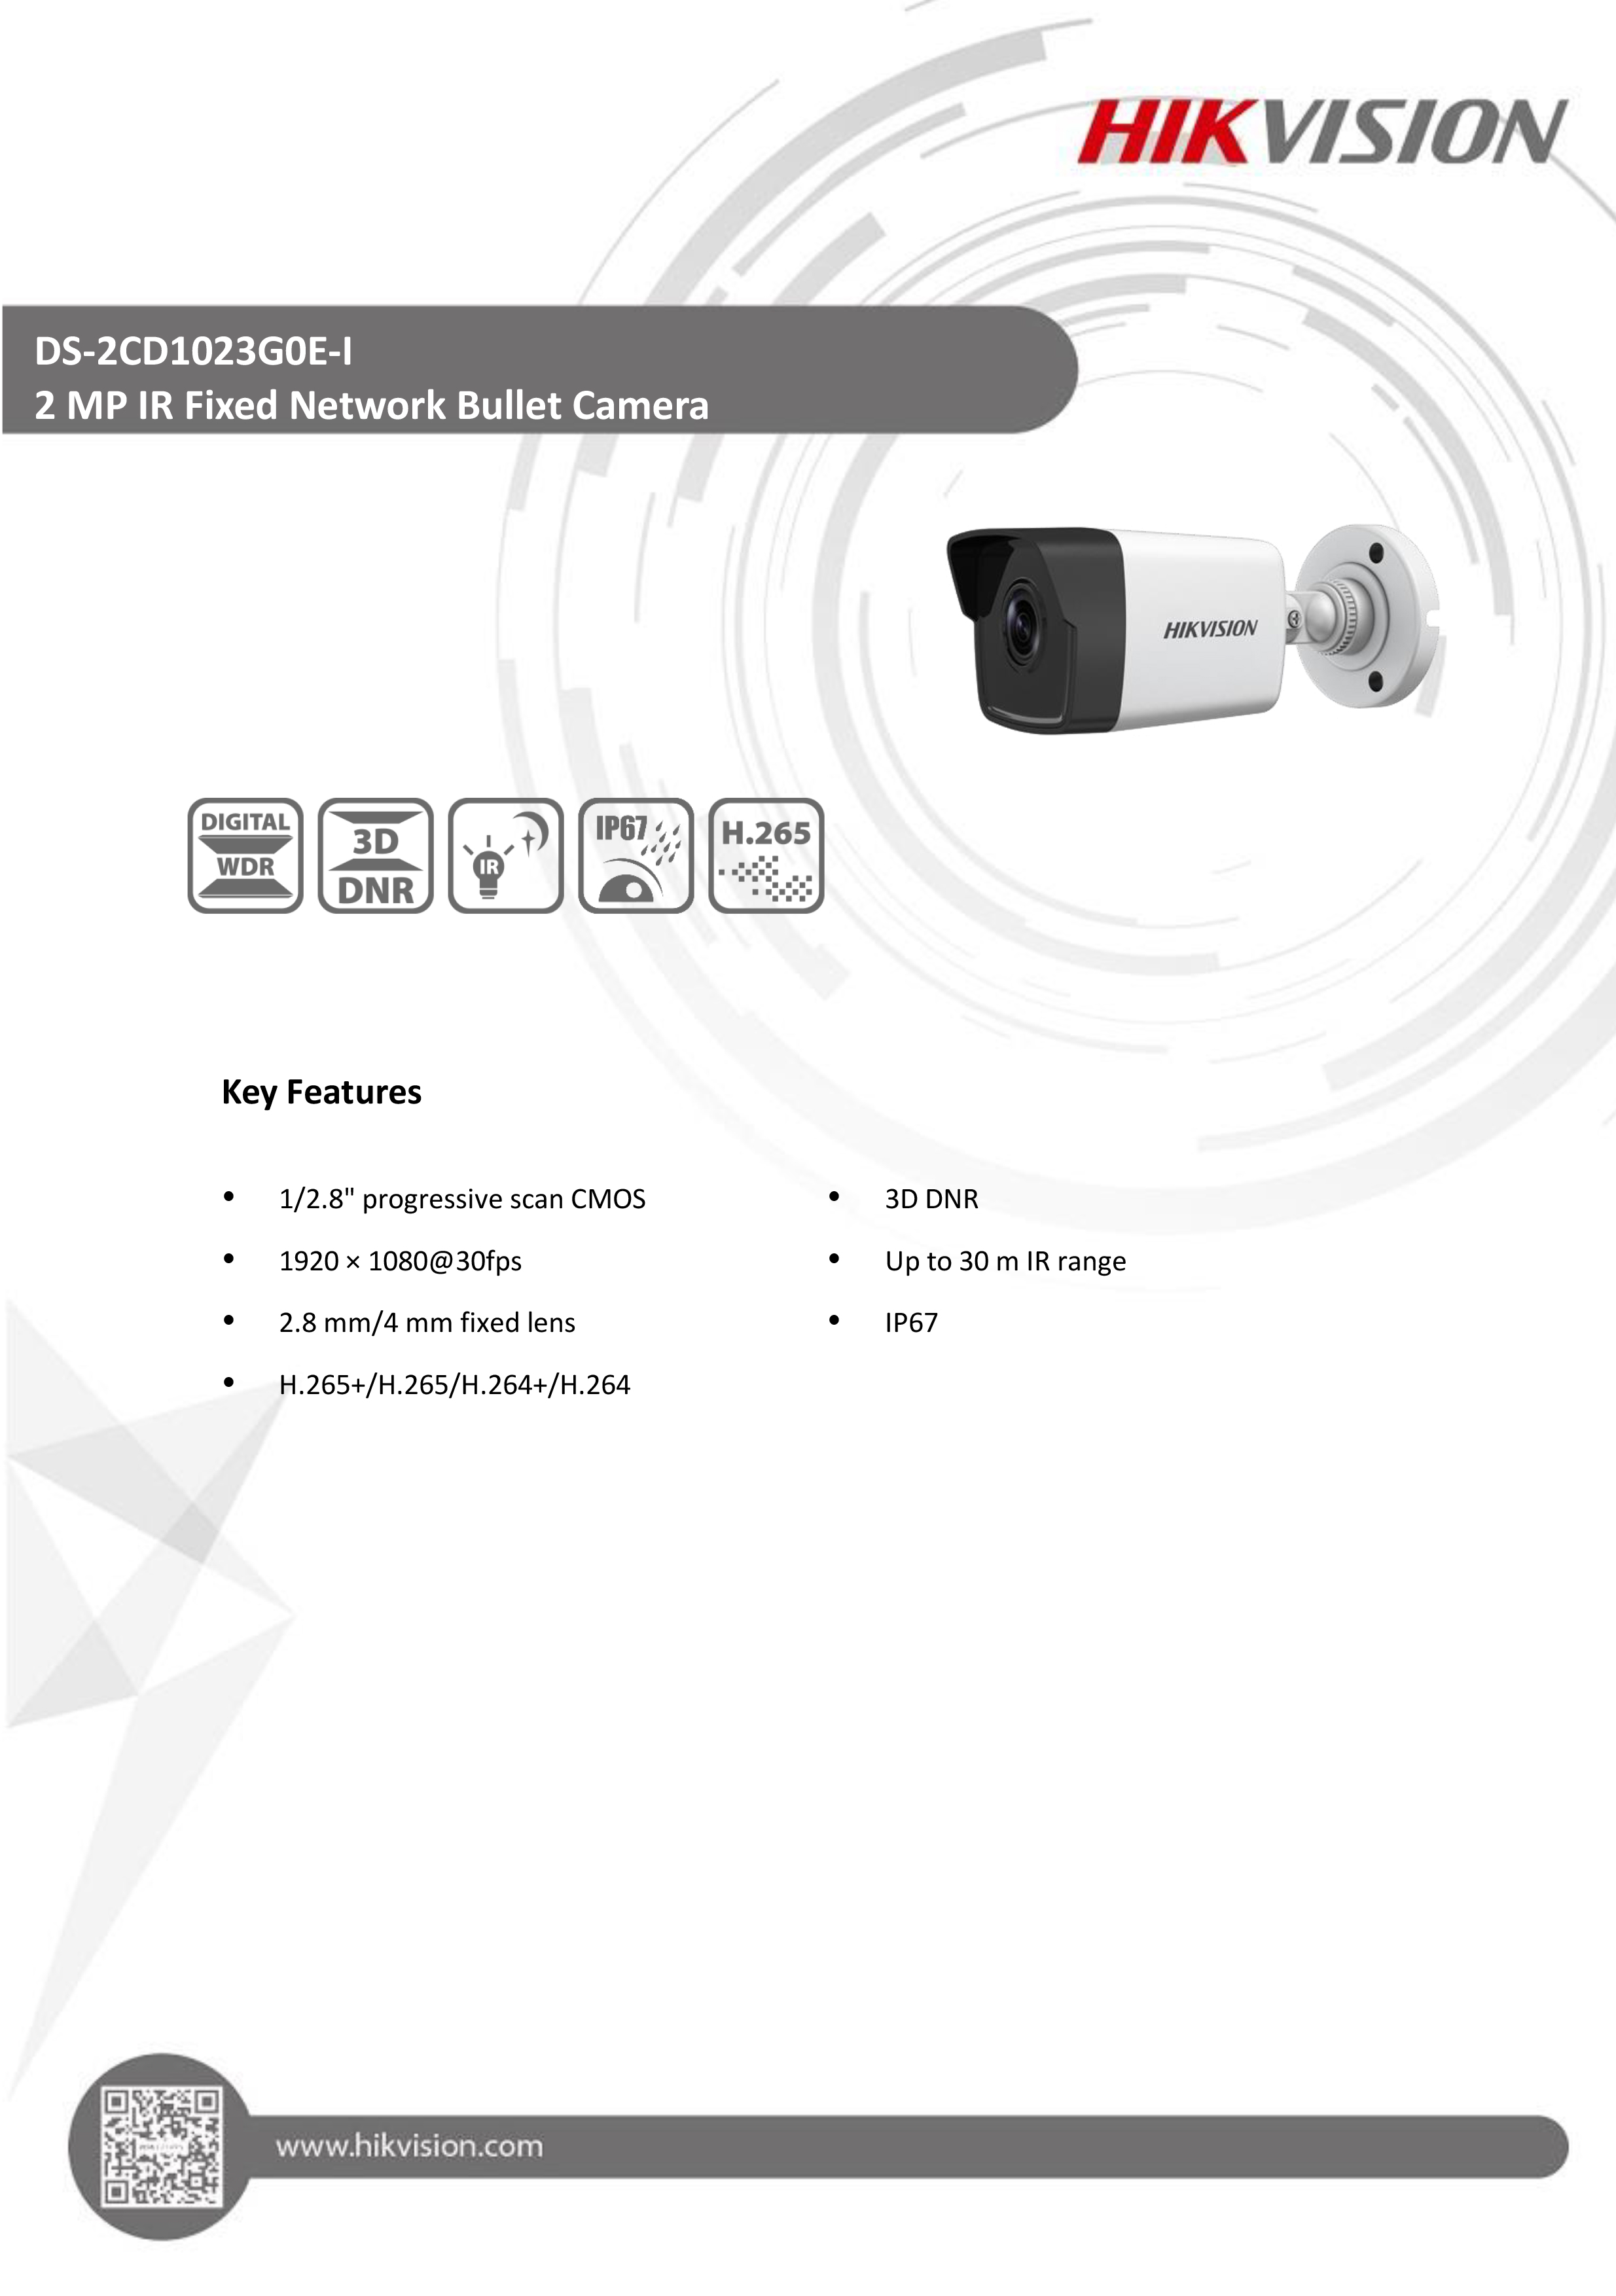 เกี่ยวกับสินค้า HIKVISION IP CAMERA 2 MP DS-2CD1023G0E-I (4 mm) H.265, POE : PACK 4 ตัว BY BILLIONAIRE SECURETECH